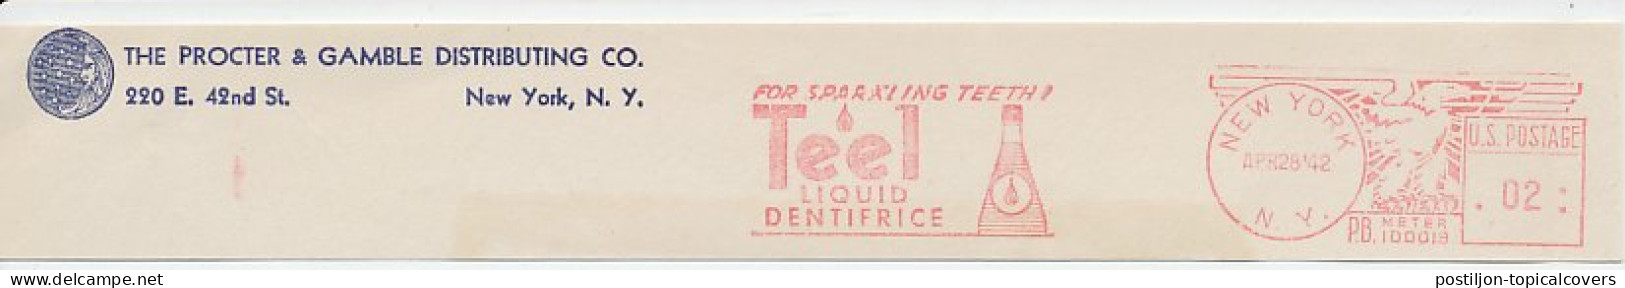 Meter Top Cut USA 1942 Liquid Dentifrice - Teel - Geneeskunde